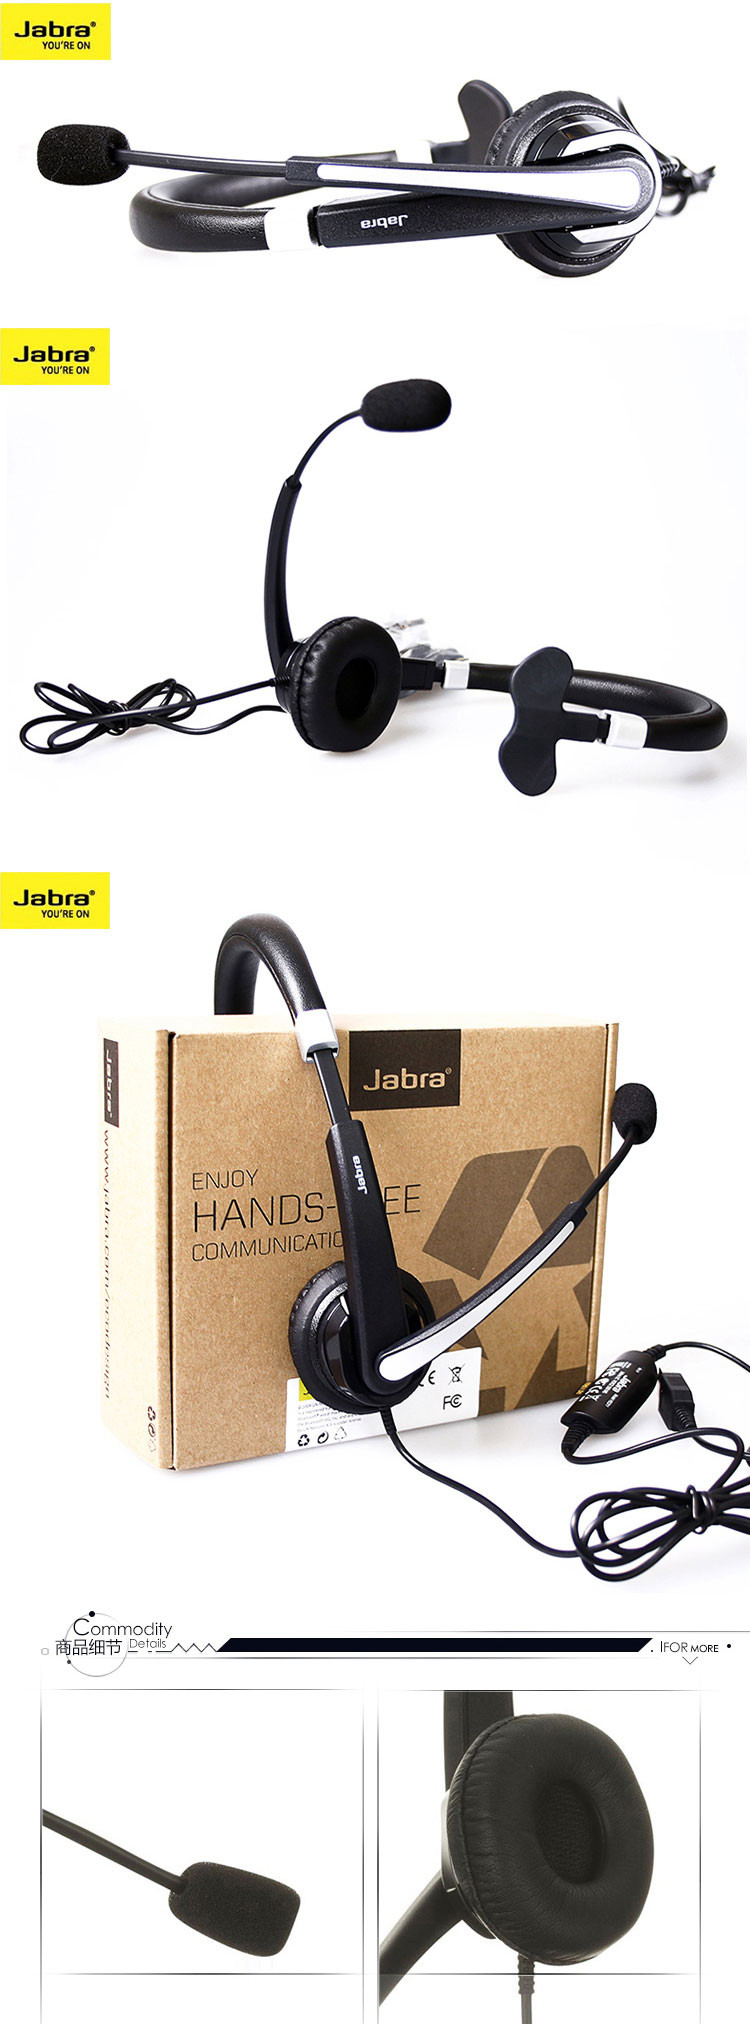 捷波朗(Jabra) UC VOICE USB接口单耳话务耳机/话务耳麦 5593-823-109